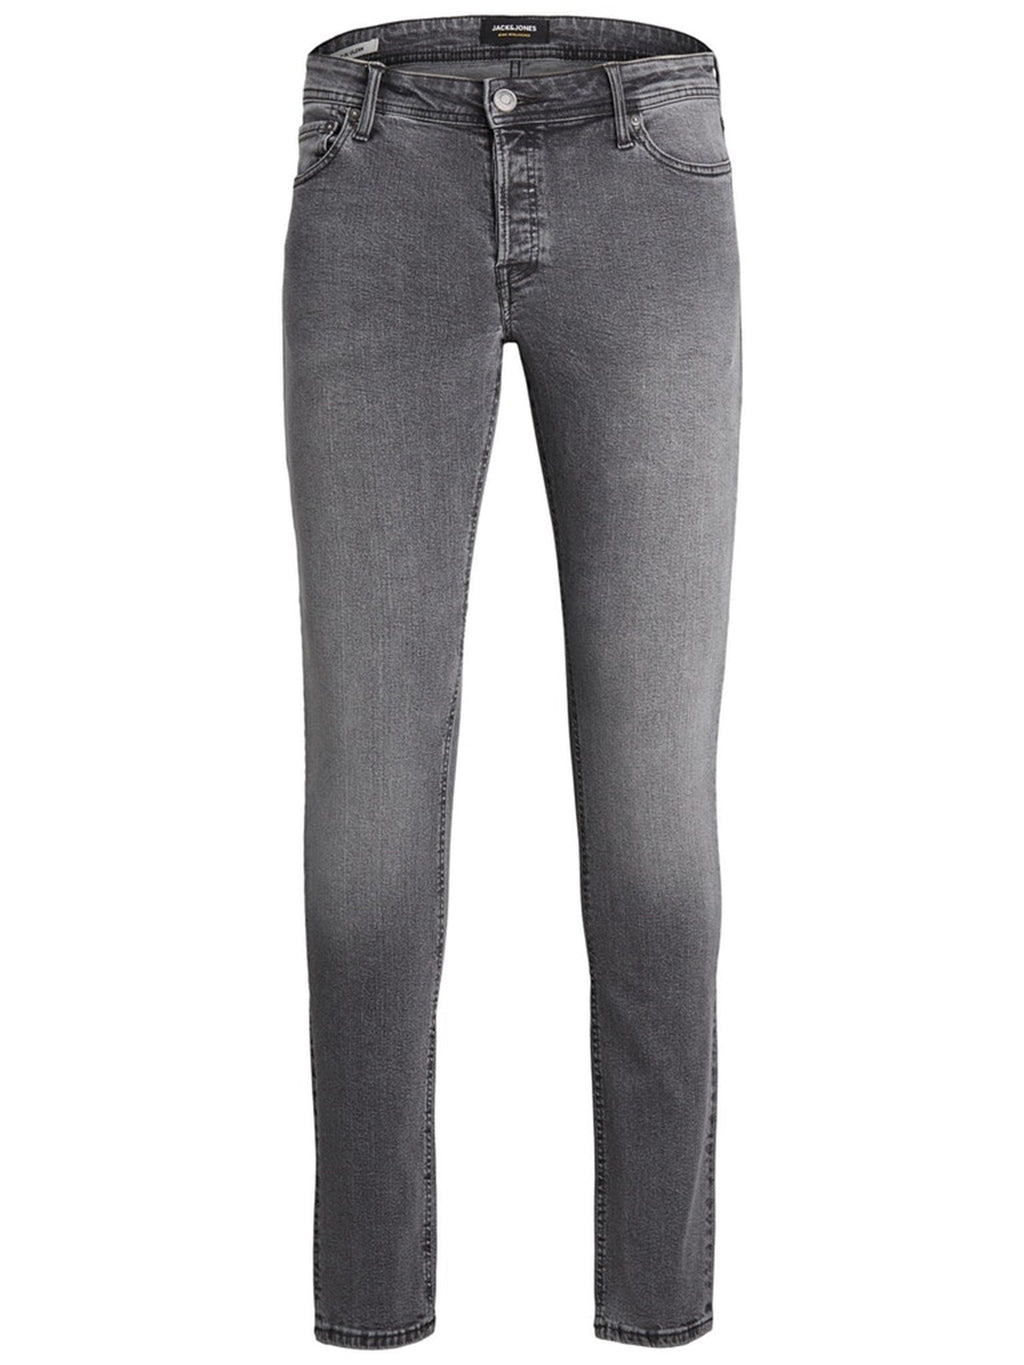 Les jeans de performance originaux (réguliers) - Denim gris